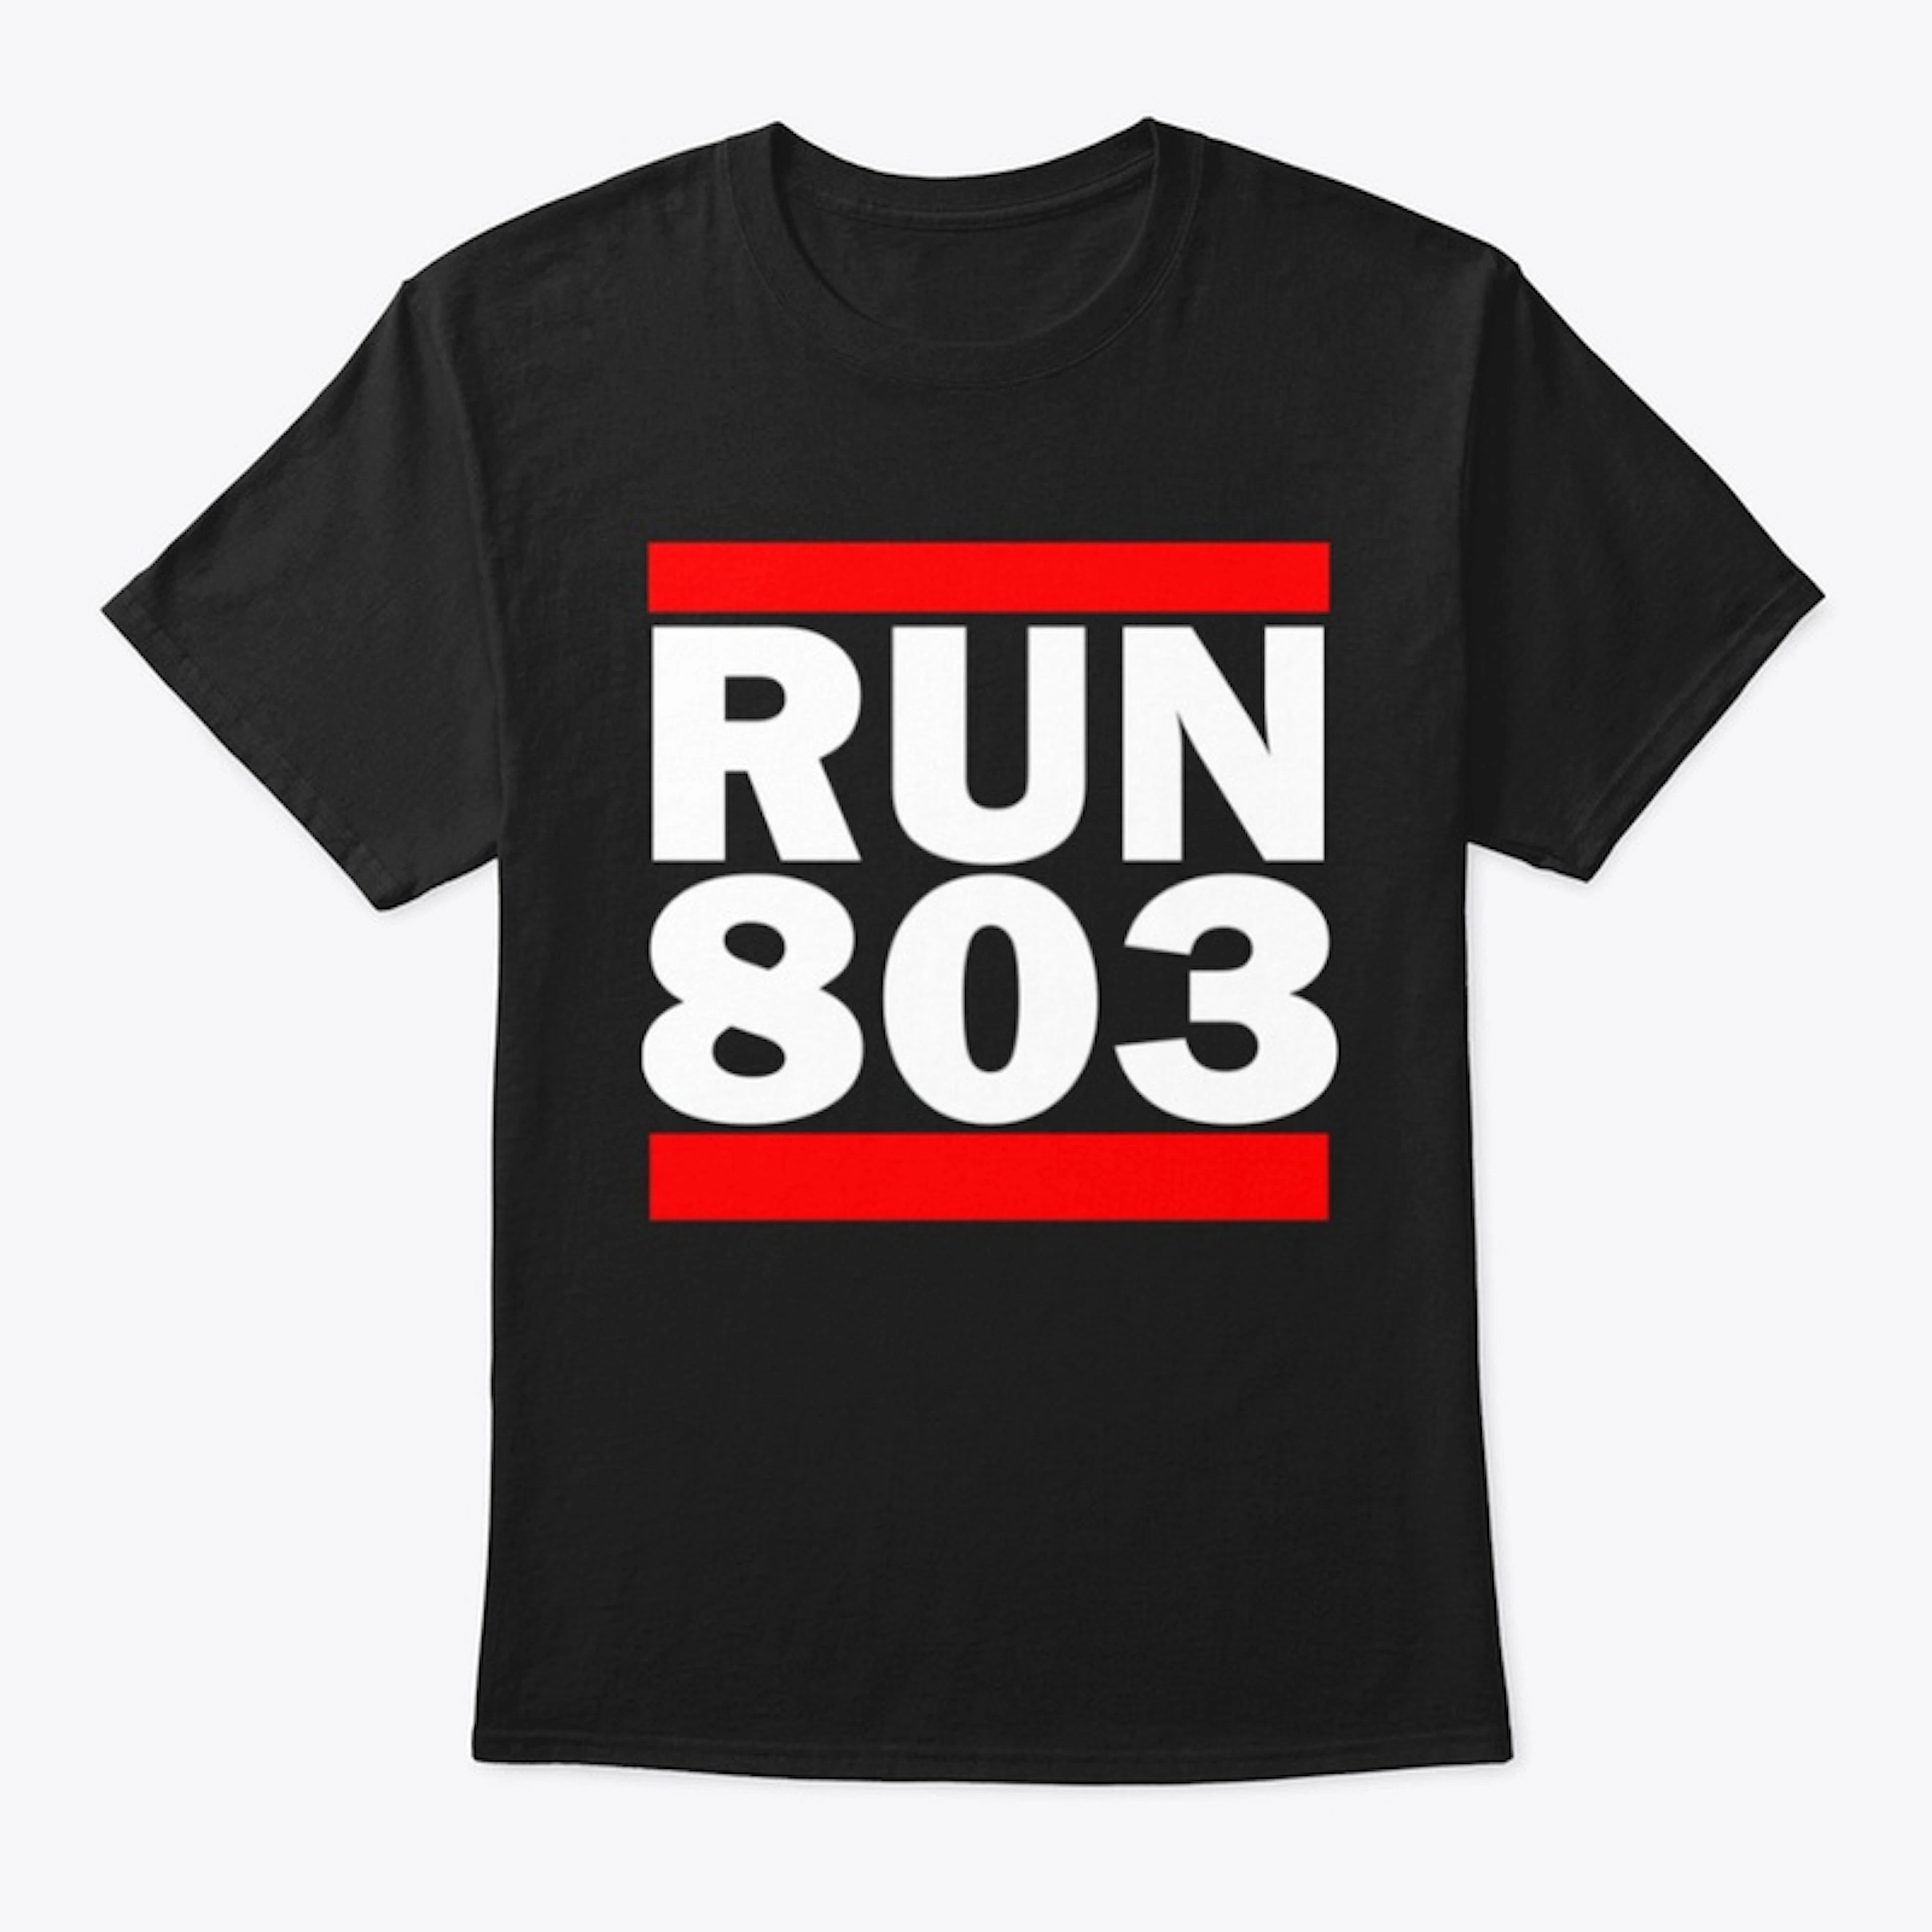 Run 803